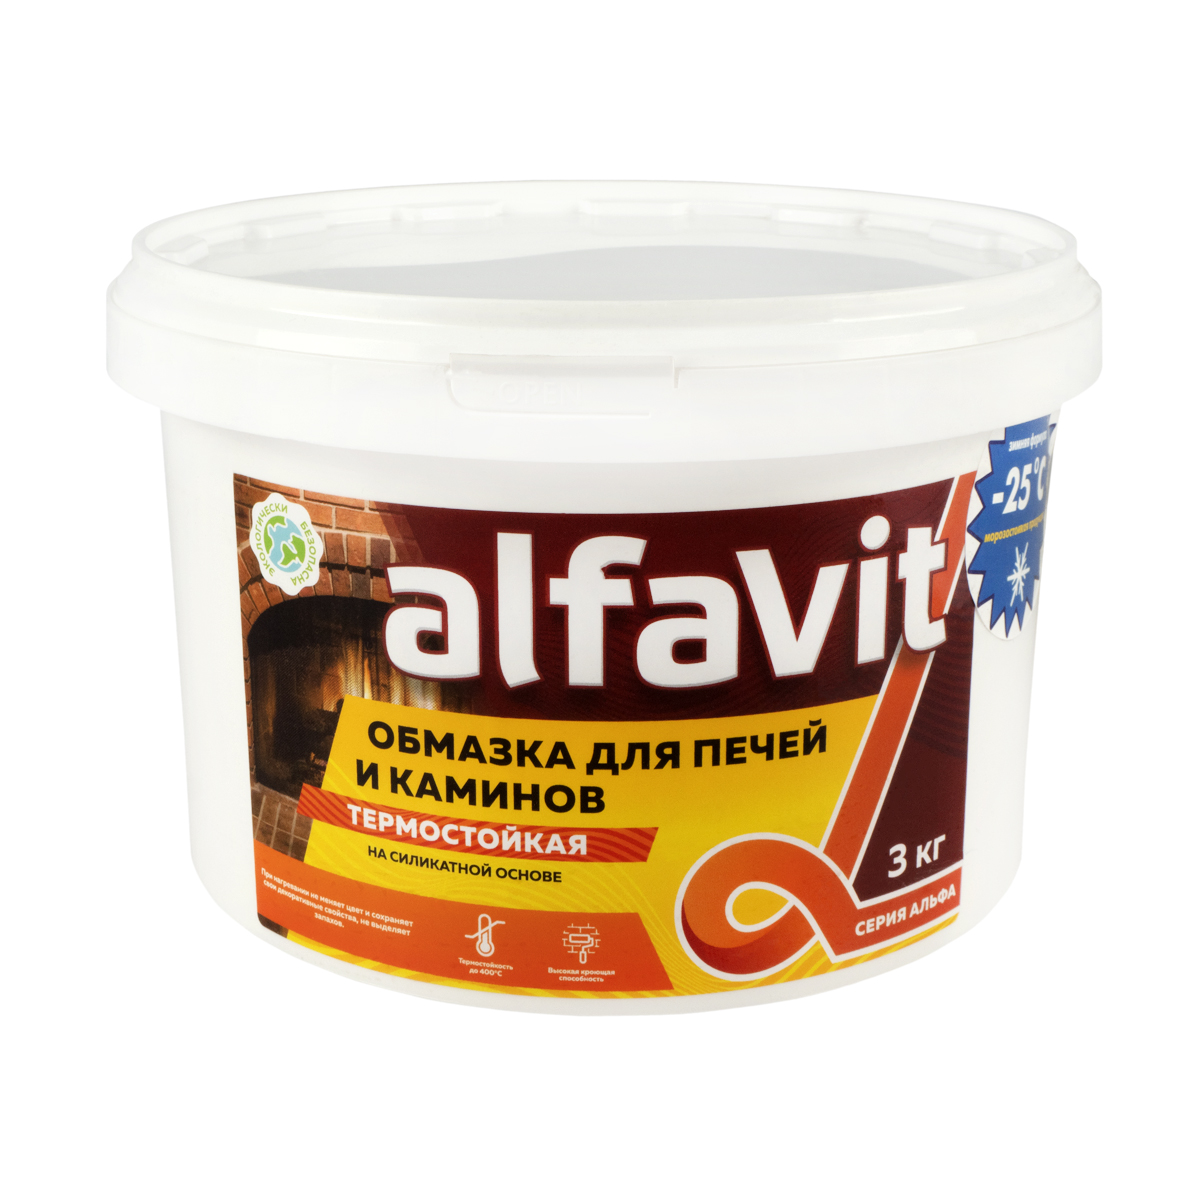 Обмазка для печей и каминов Alfavit серия Альфа, белая, 3 кг герметик для печей penosil